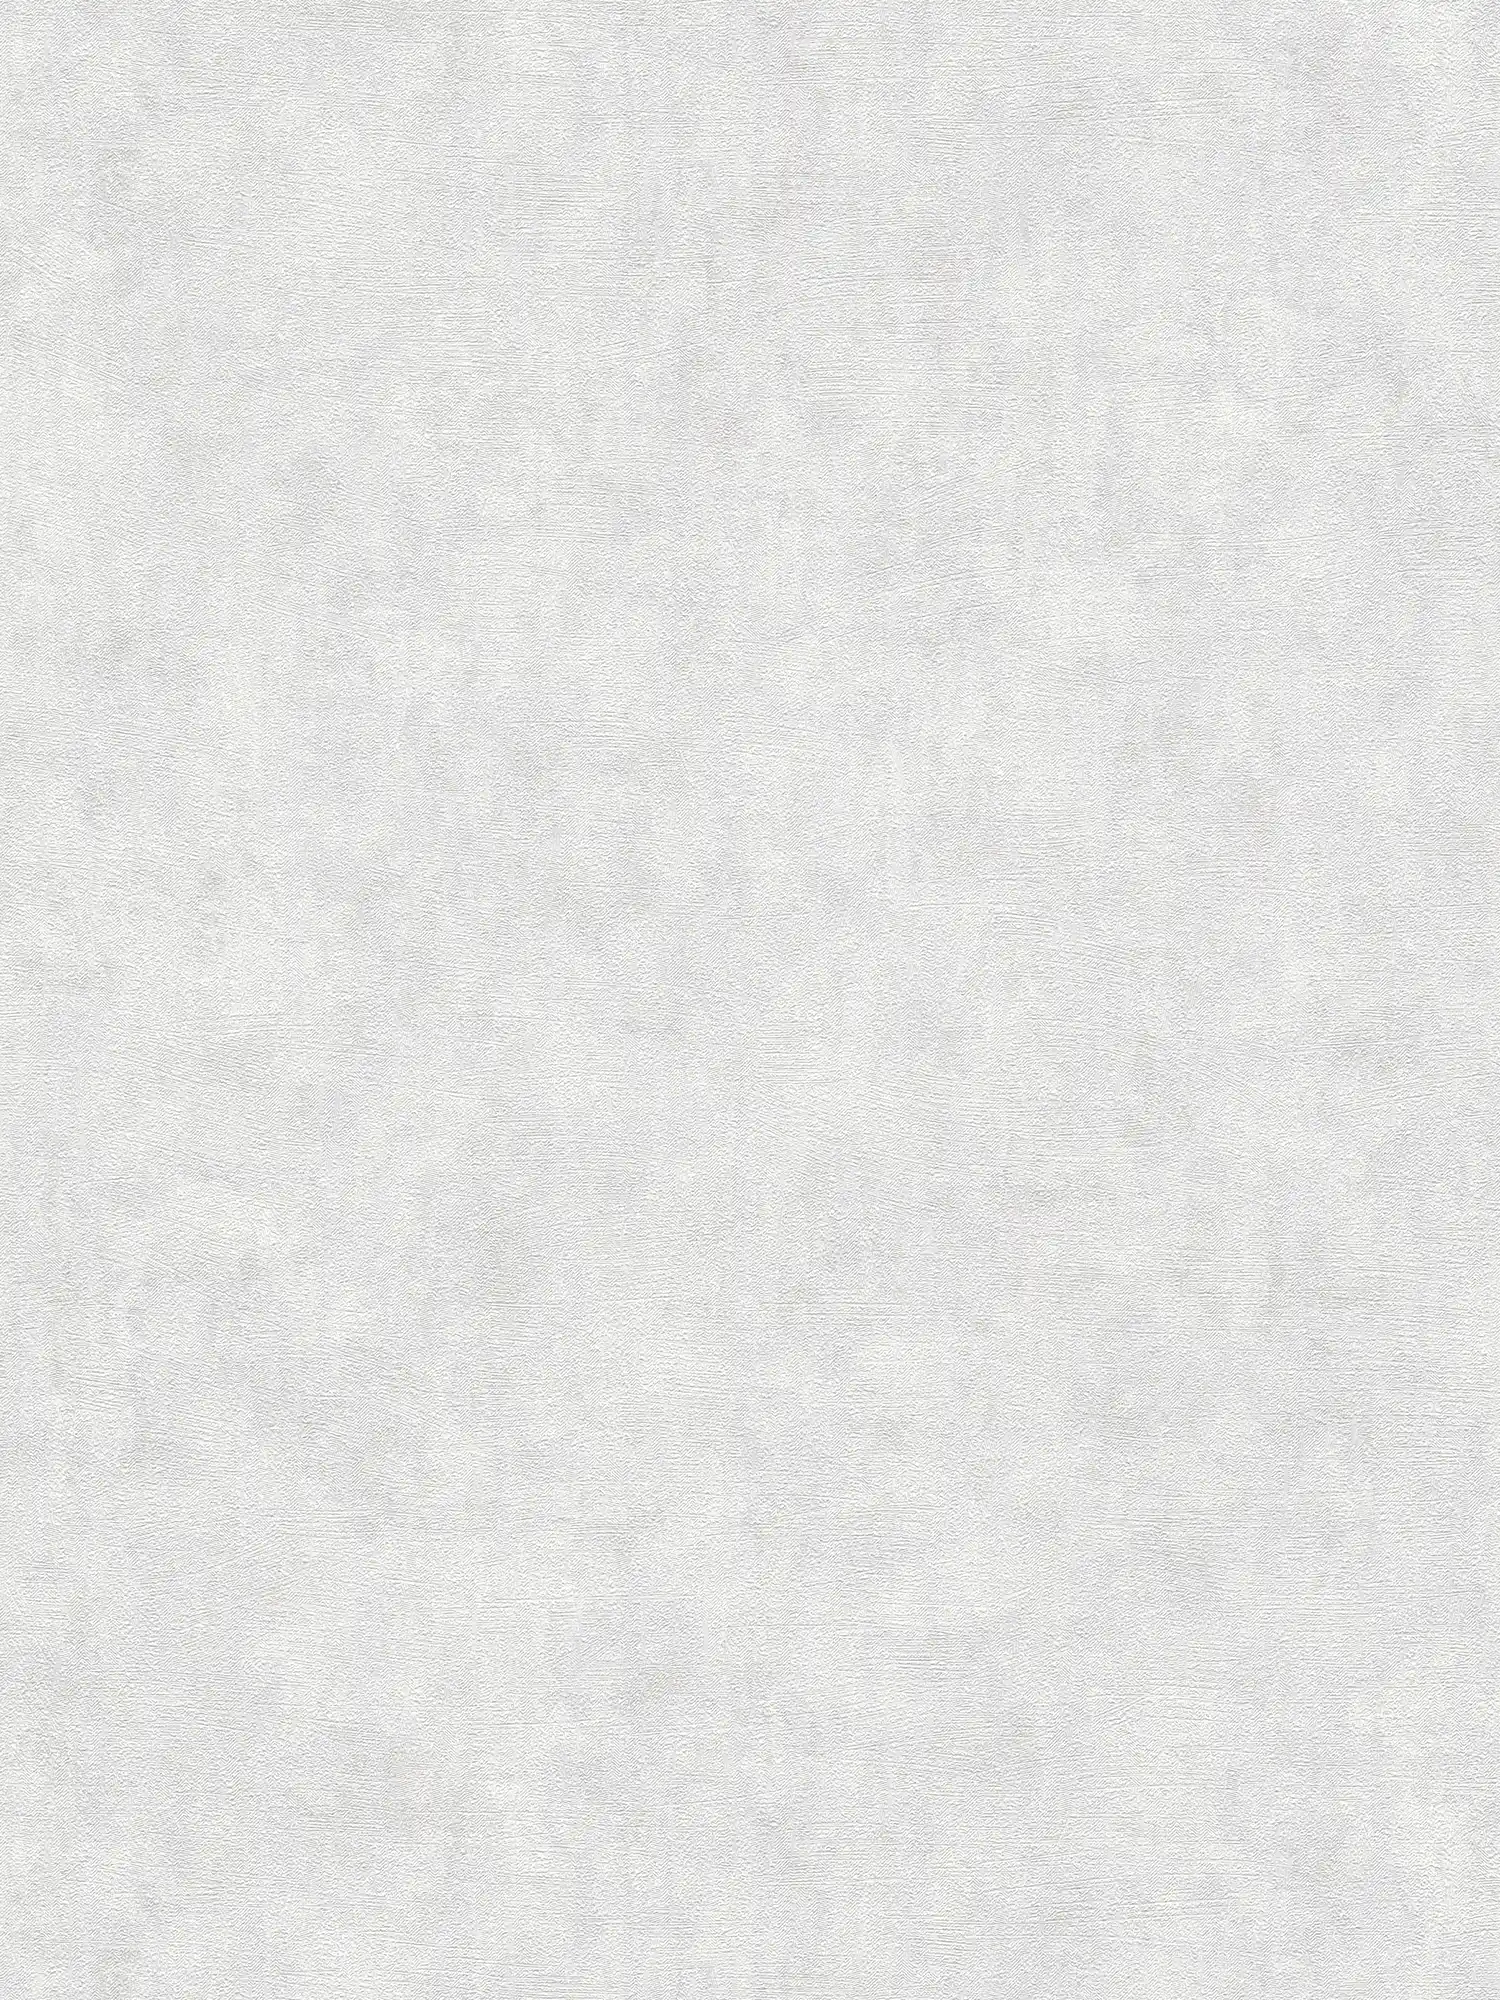 Carta da parati in tessuto non tessuto con motivo strutturato a tinta unita - bianco, grigio
